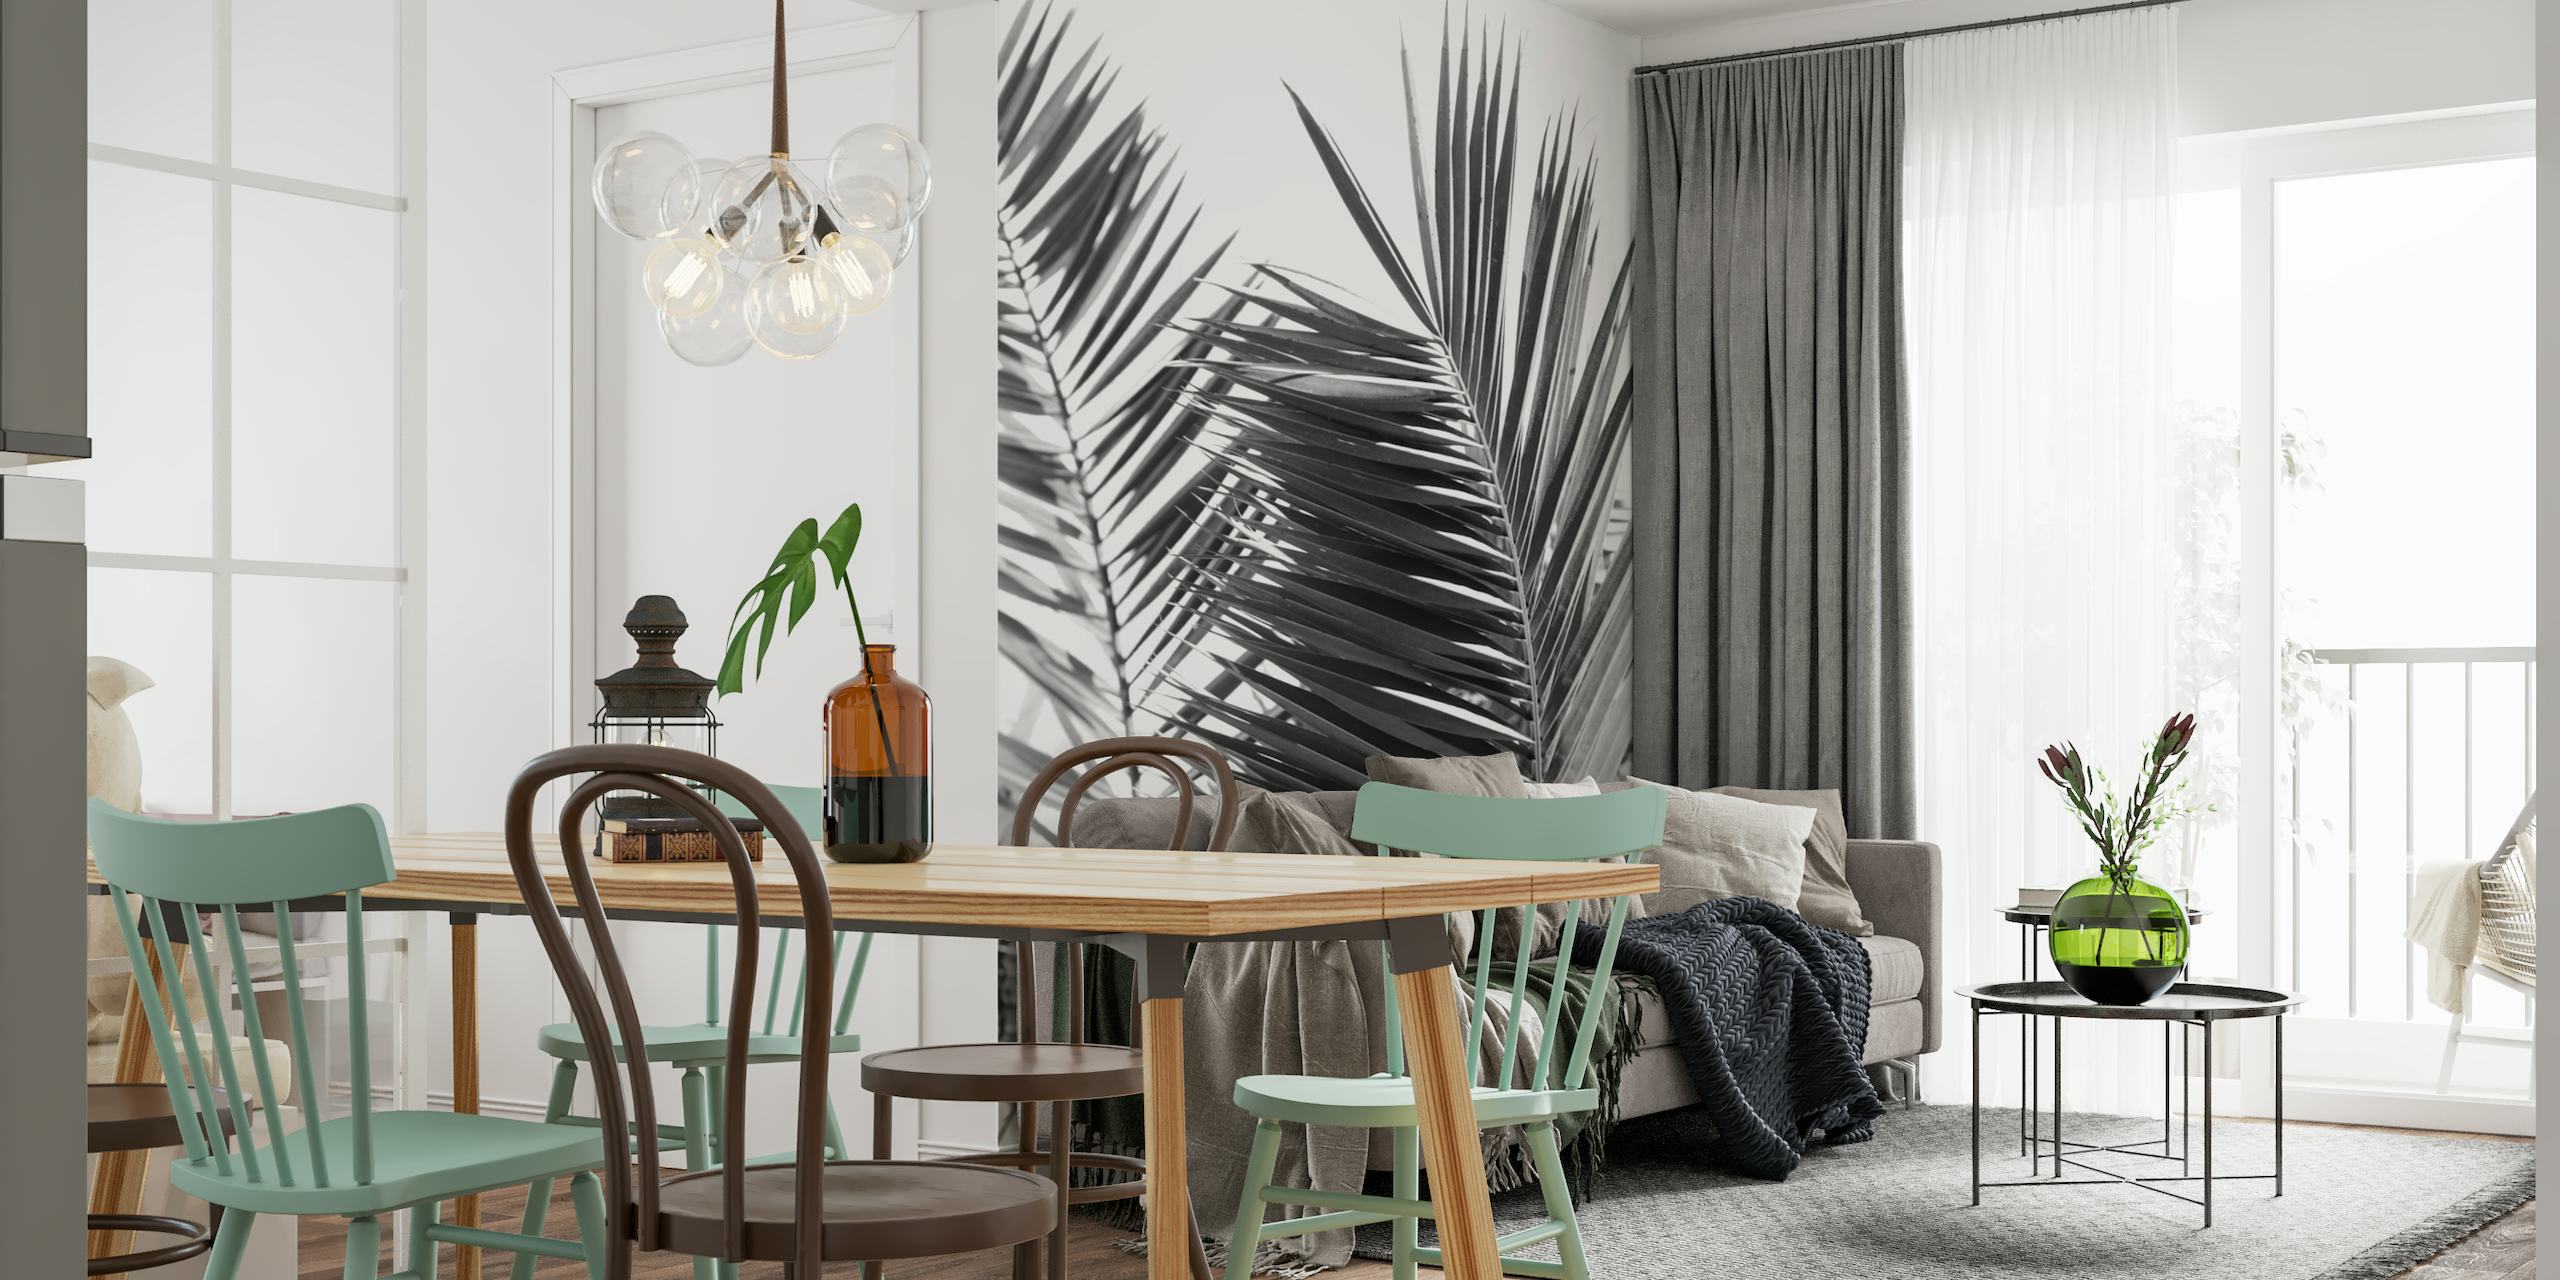 Santorini Palm Leaves Dream 2 wallpaper